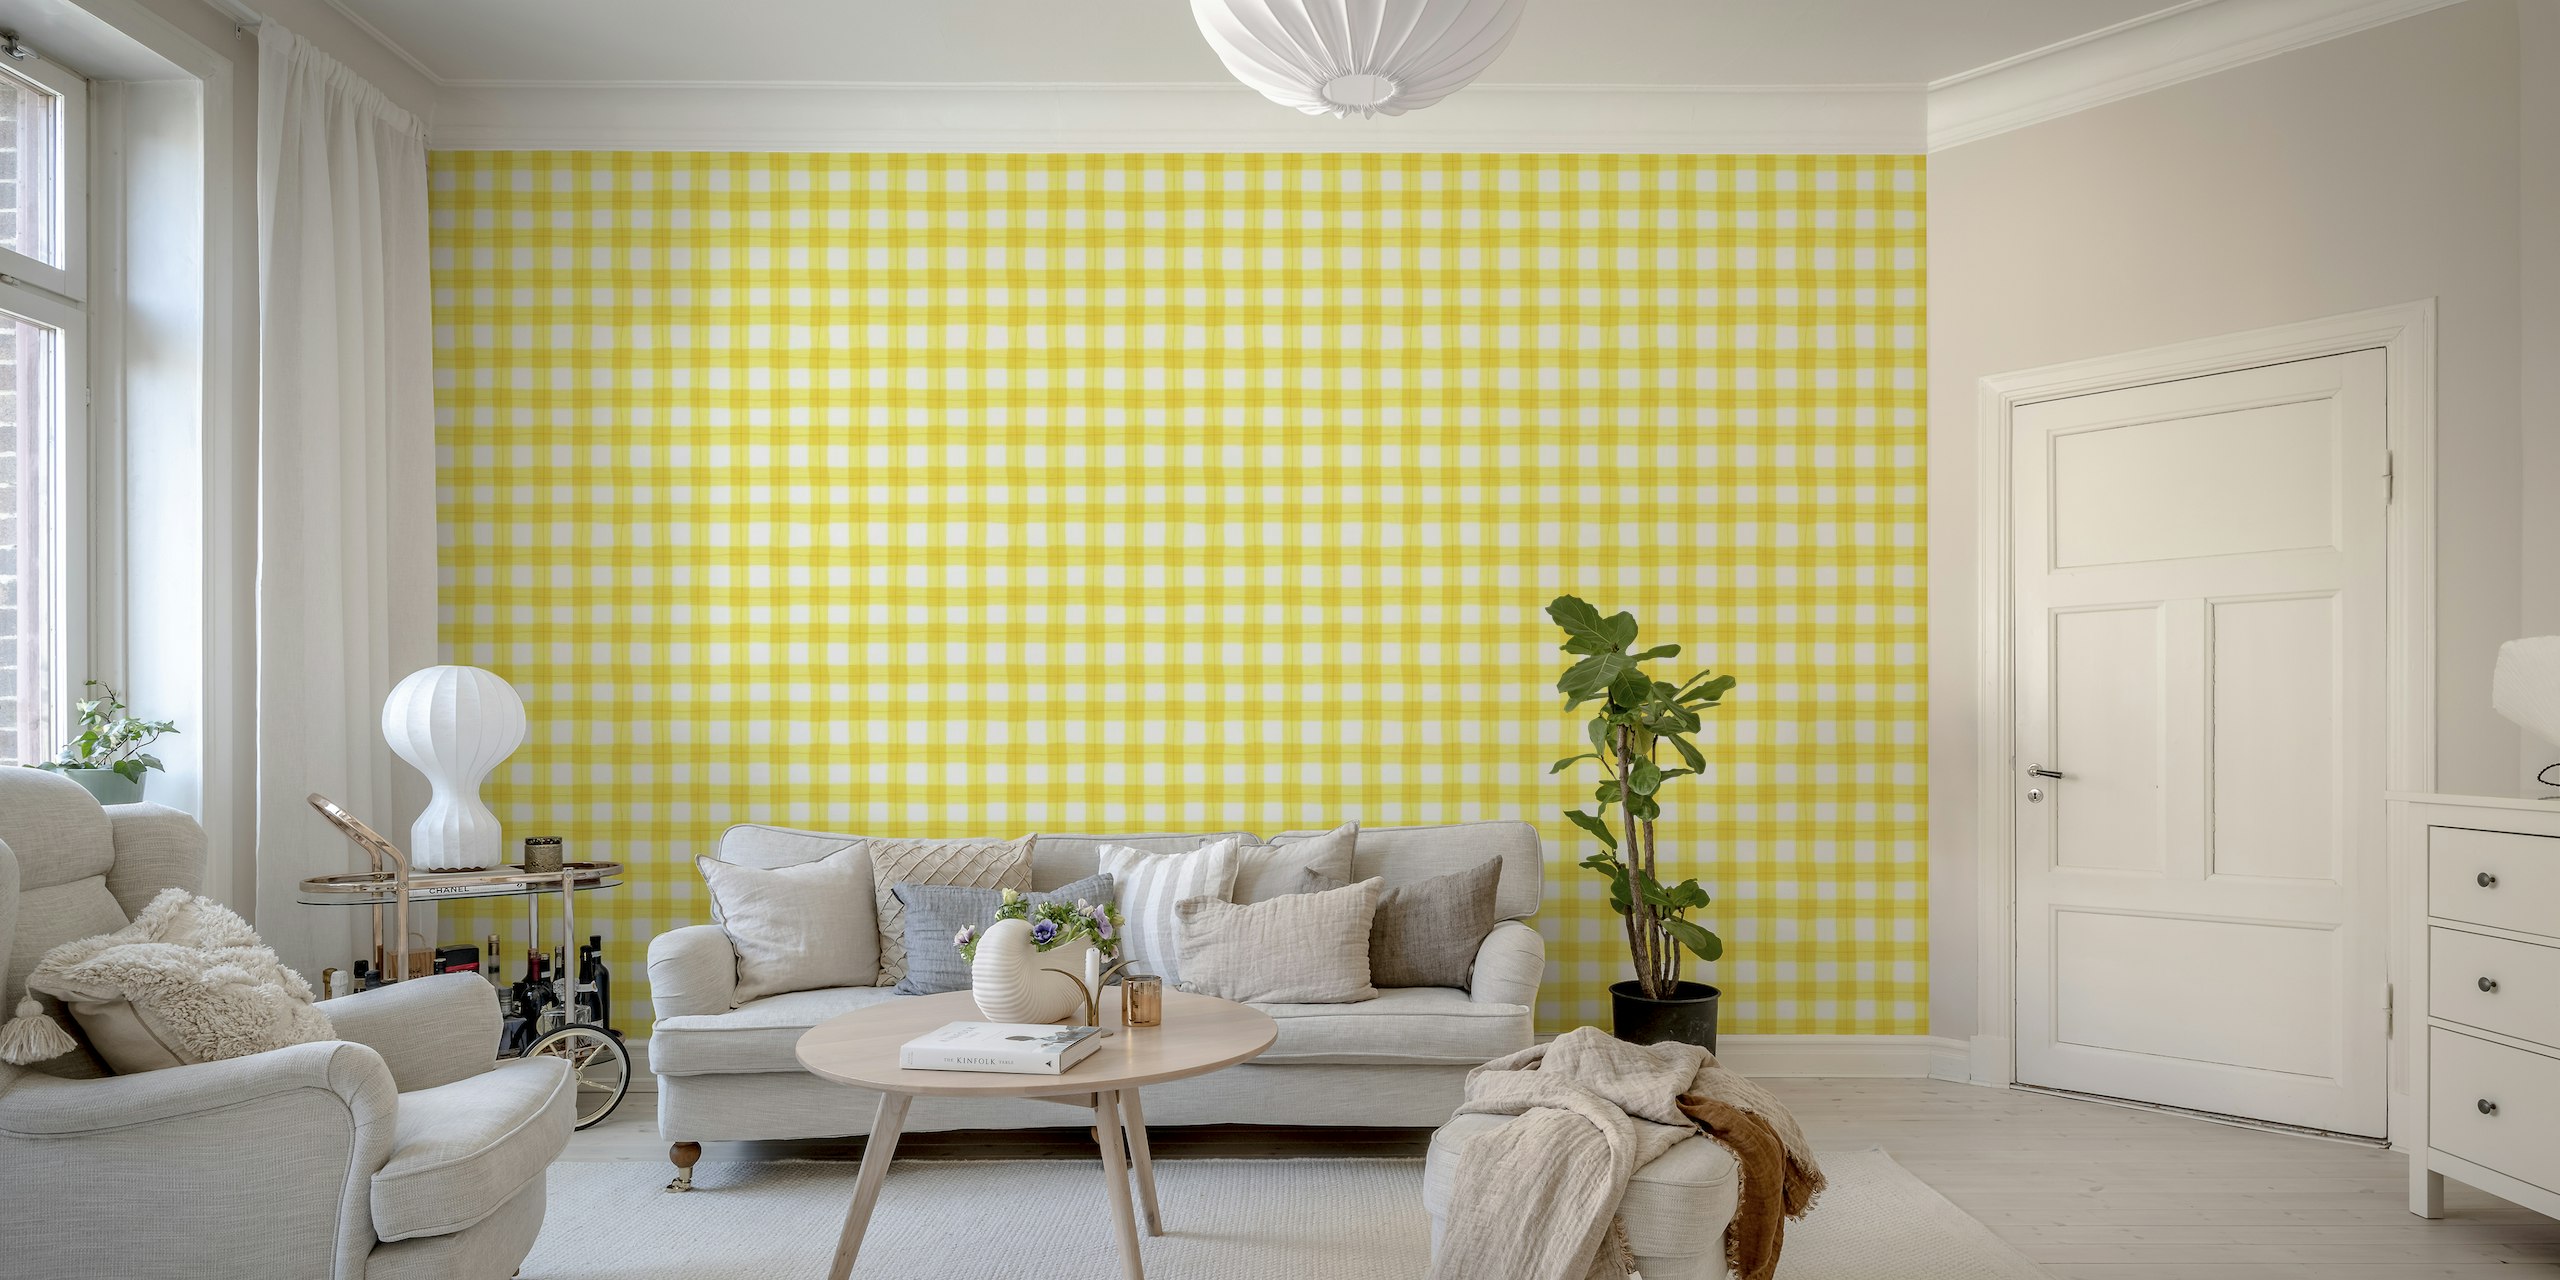 Yellow gingham pattern behang